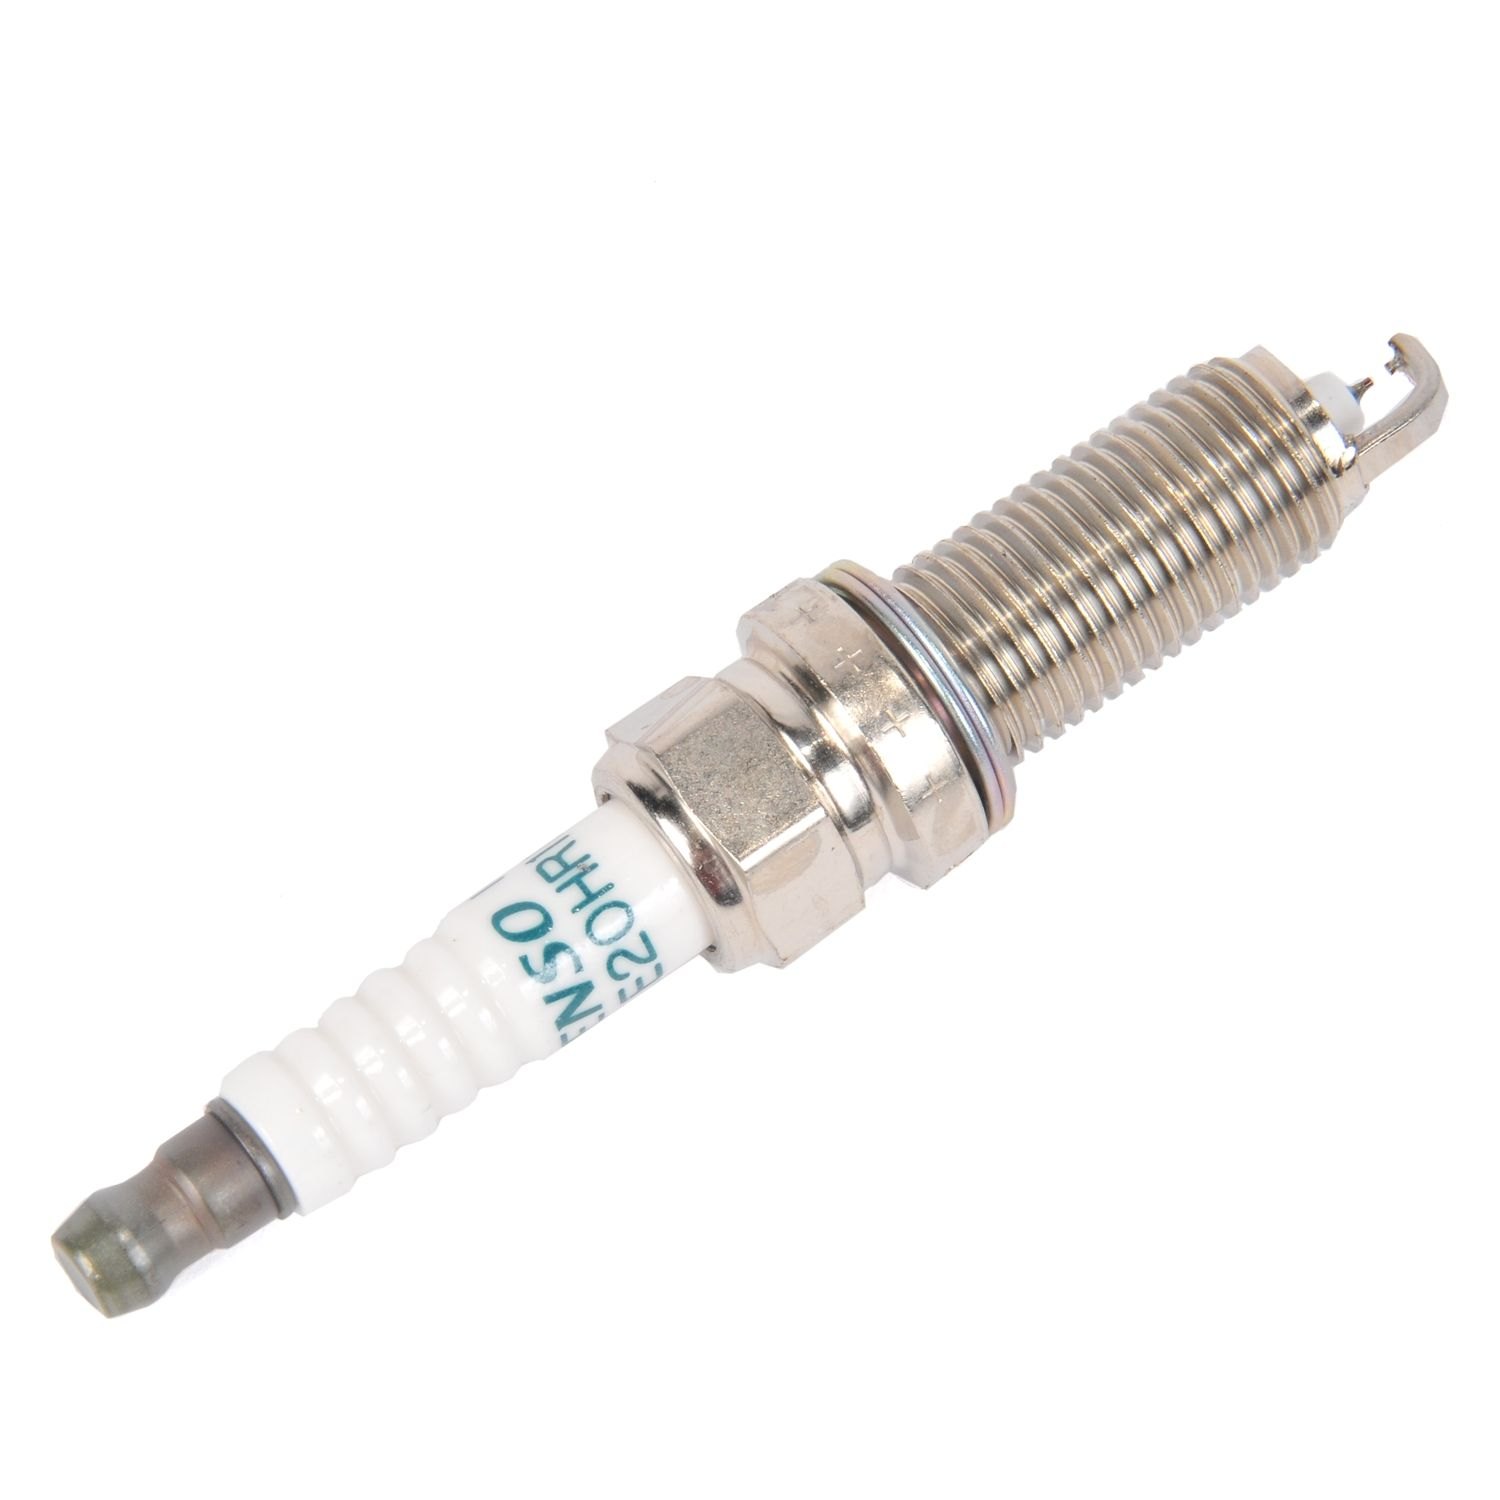 acdelco-19316339-gm-original-equipment-iridium-spark-plug